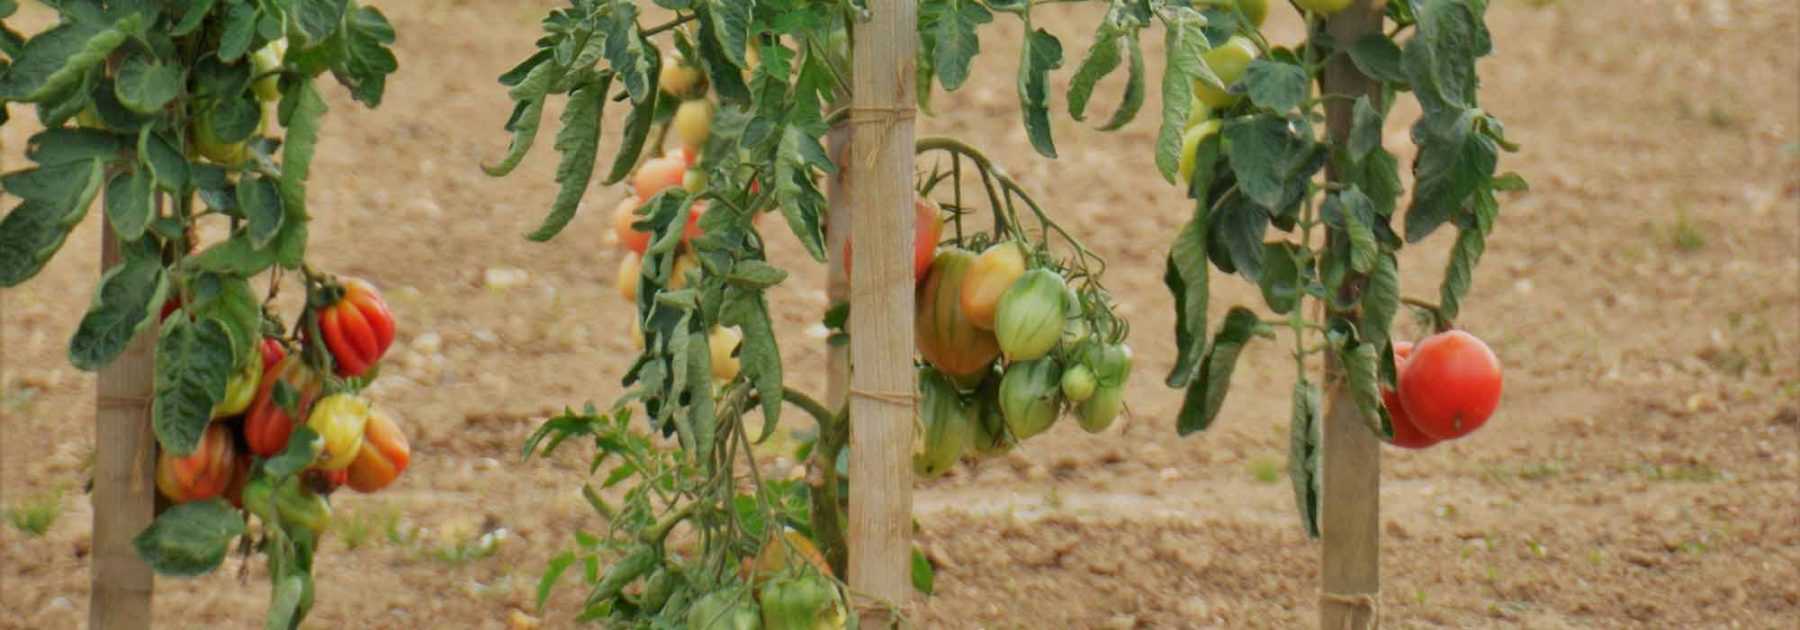 Fabriquer des tuteurs à tomates